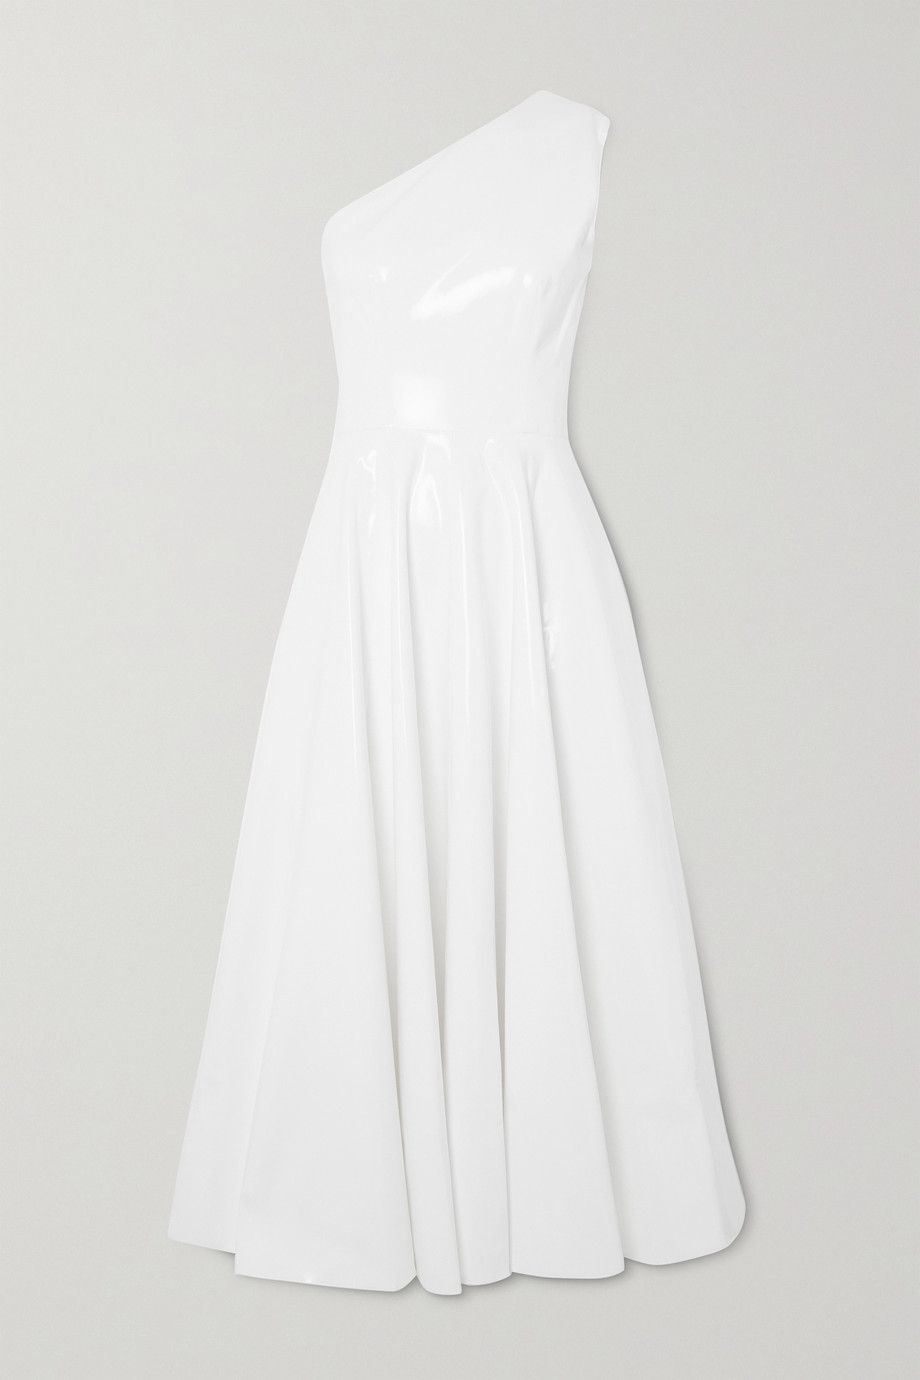 black & white dress for wedding